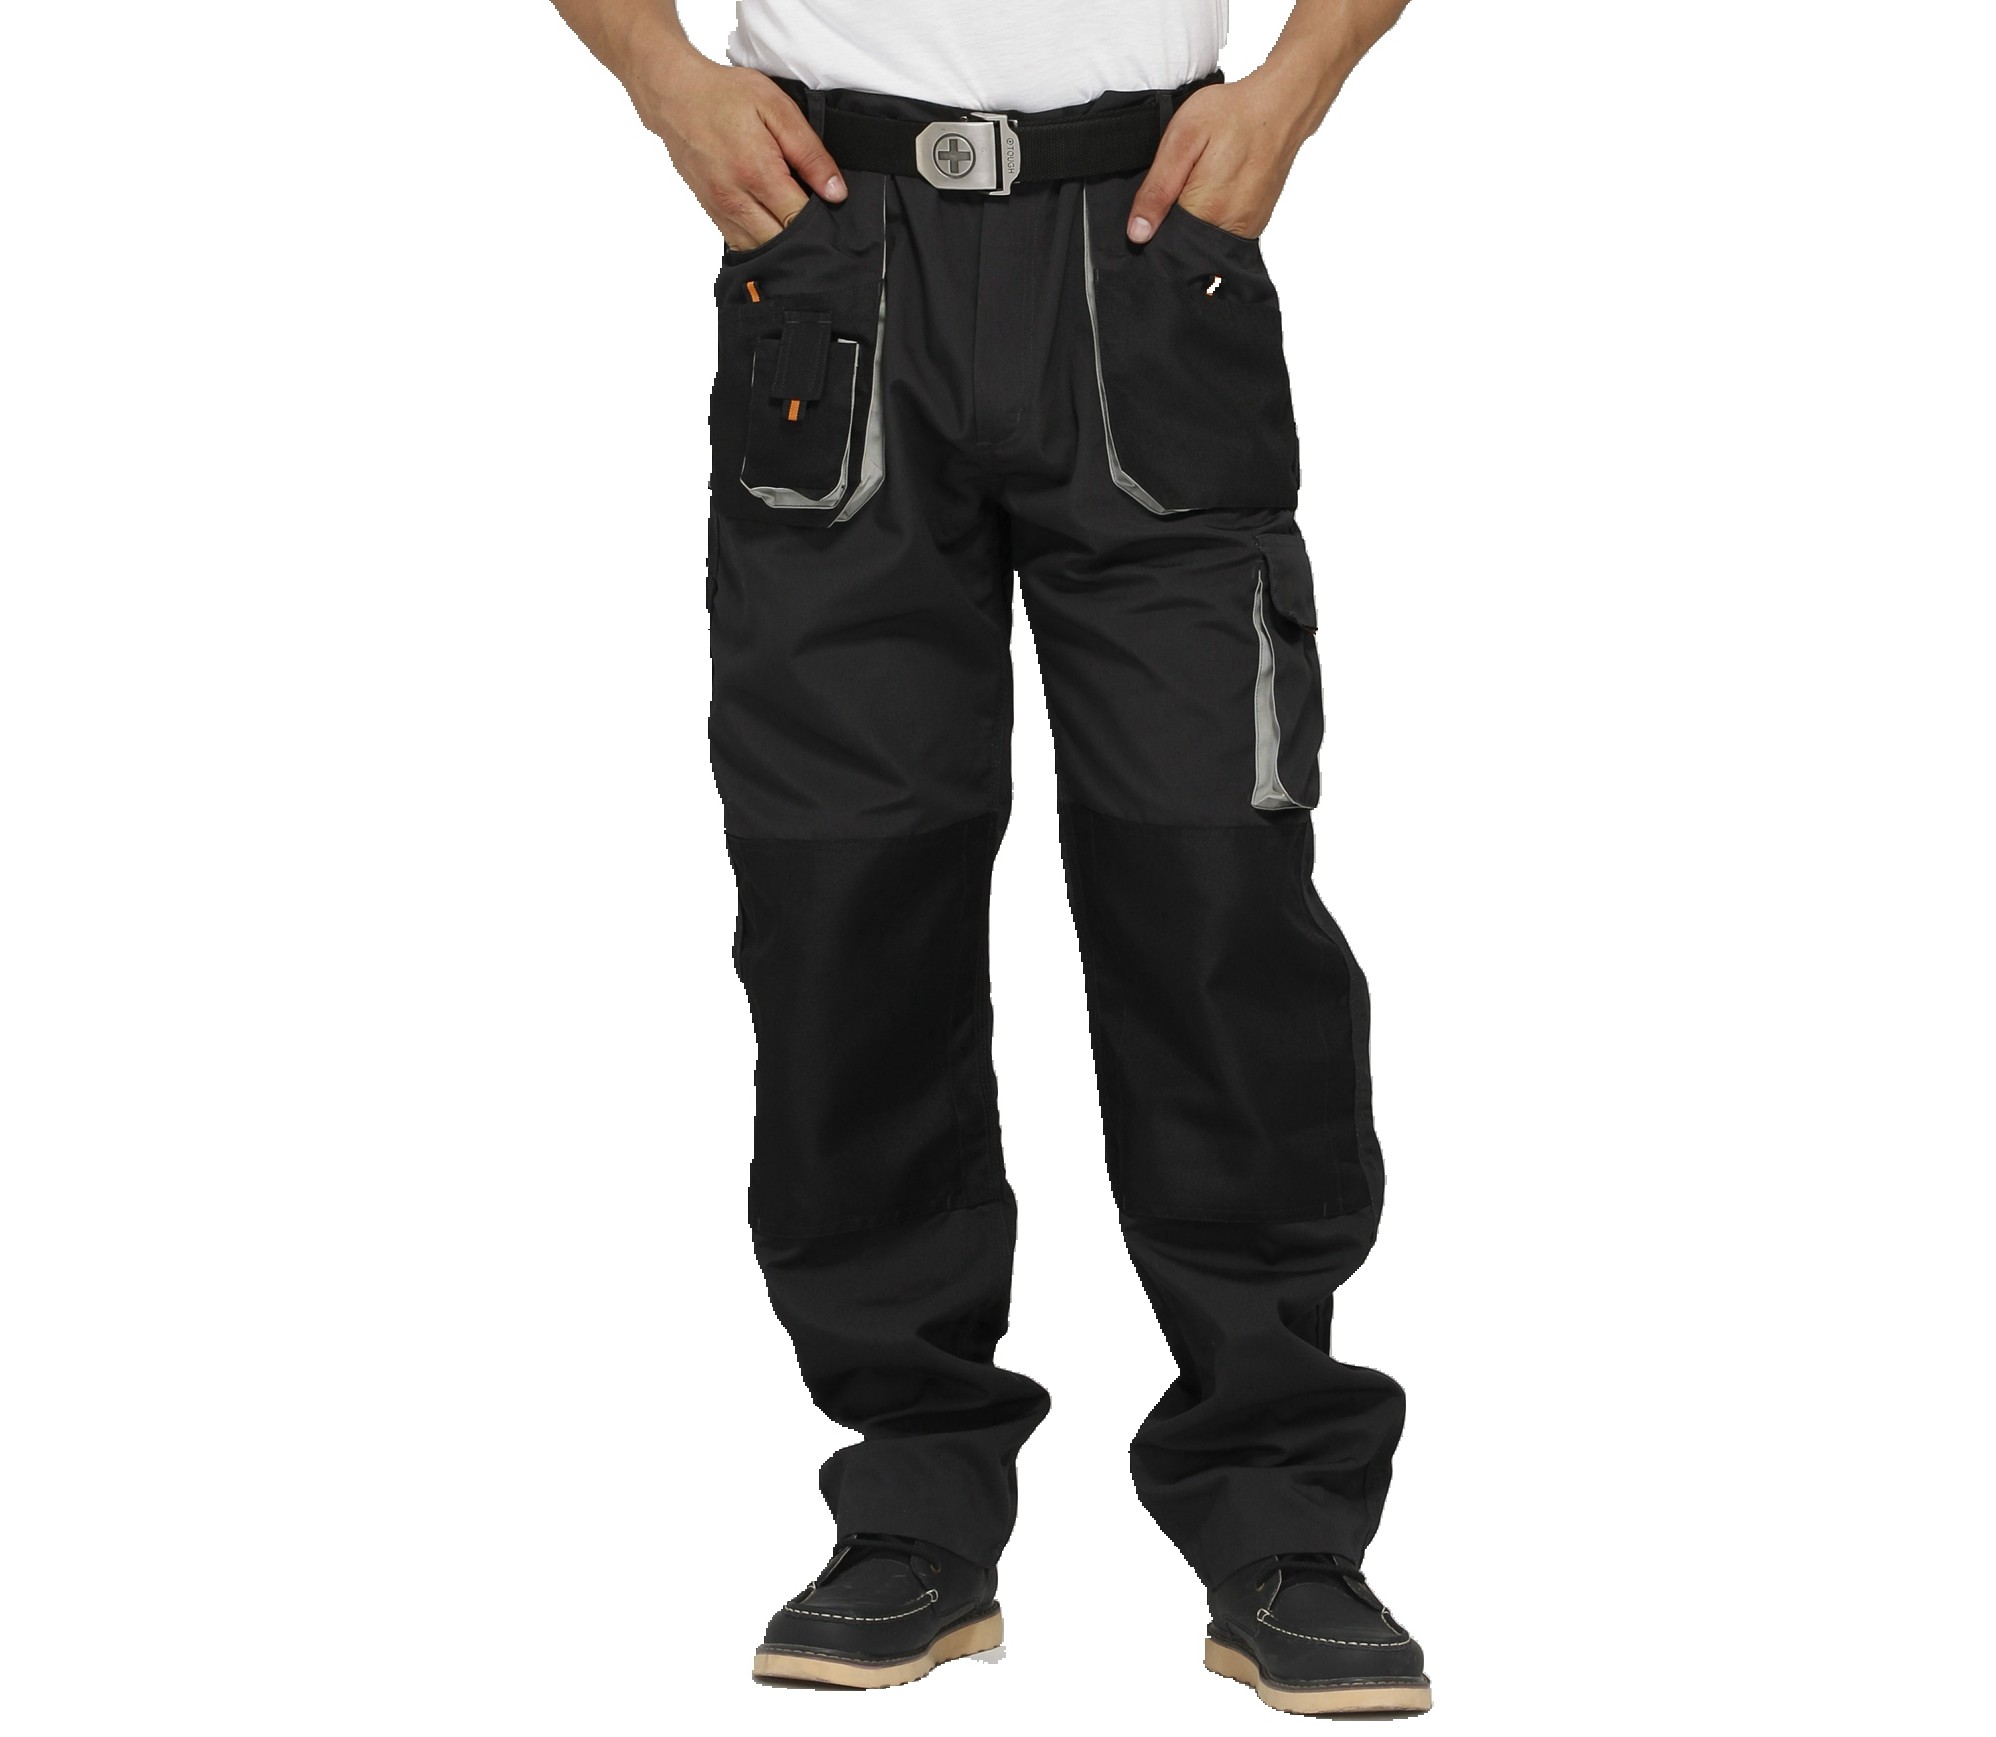 Calças uniformes do trabalho de Funtional, duráveis para a indústria ou a calças do trabalhador da construção